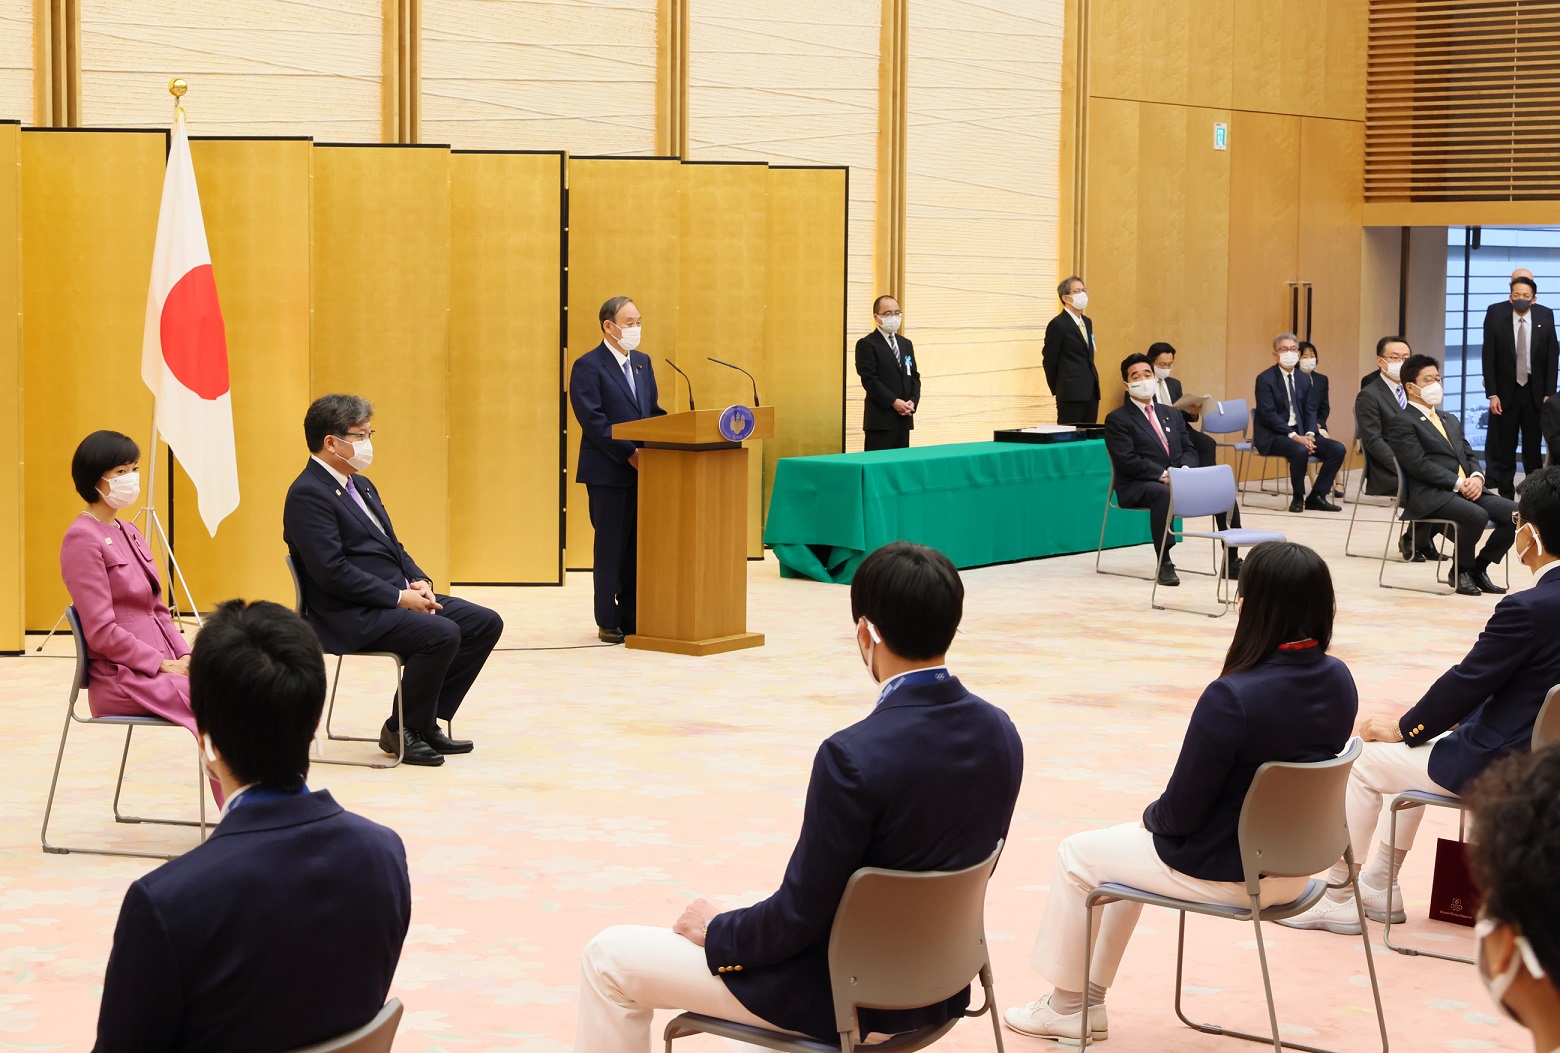 授予东京奥运会及残奥会日本选手代表团的内阁总理大臣感谢状颁发仪式